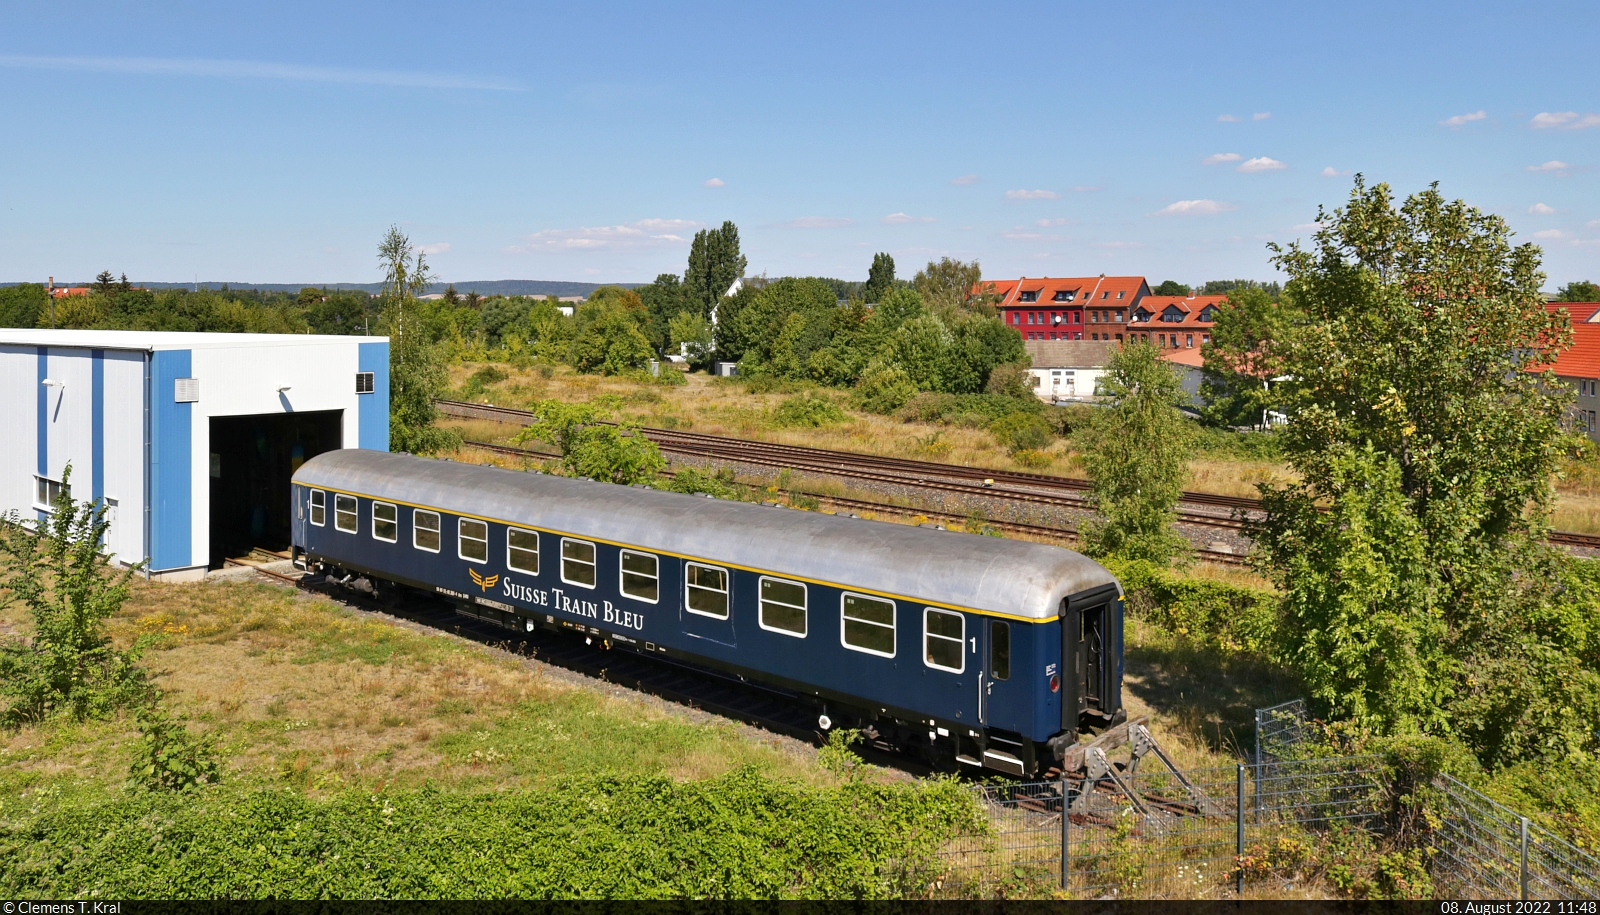 Bei der Verkehrs Industrie Systeme GmbH (VIS) Halberstadt ist ein UIC-X-Wagen (DB) mit der Bezeichnung  Am  (A4ümg-54 | 56 80 10-40 360-4 D-IRSI), womöglich zur Aufarbeitung, abgestellt. Er soll bei Sonderzugfahrten des Suisse Train Bleu in der Schweiz zum Einsatz kommen.
Fotografiert von der Magdeburger Chaussee (B 81).

🧰 Suisse Train Bleu (Rail Event AG)
🕓 8.8.2022 | 11:48 Uhr